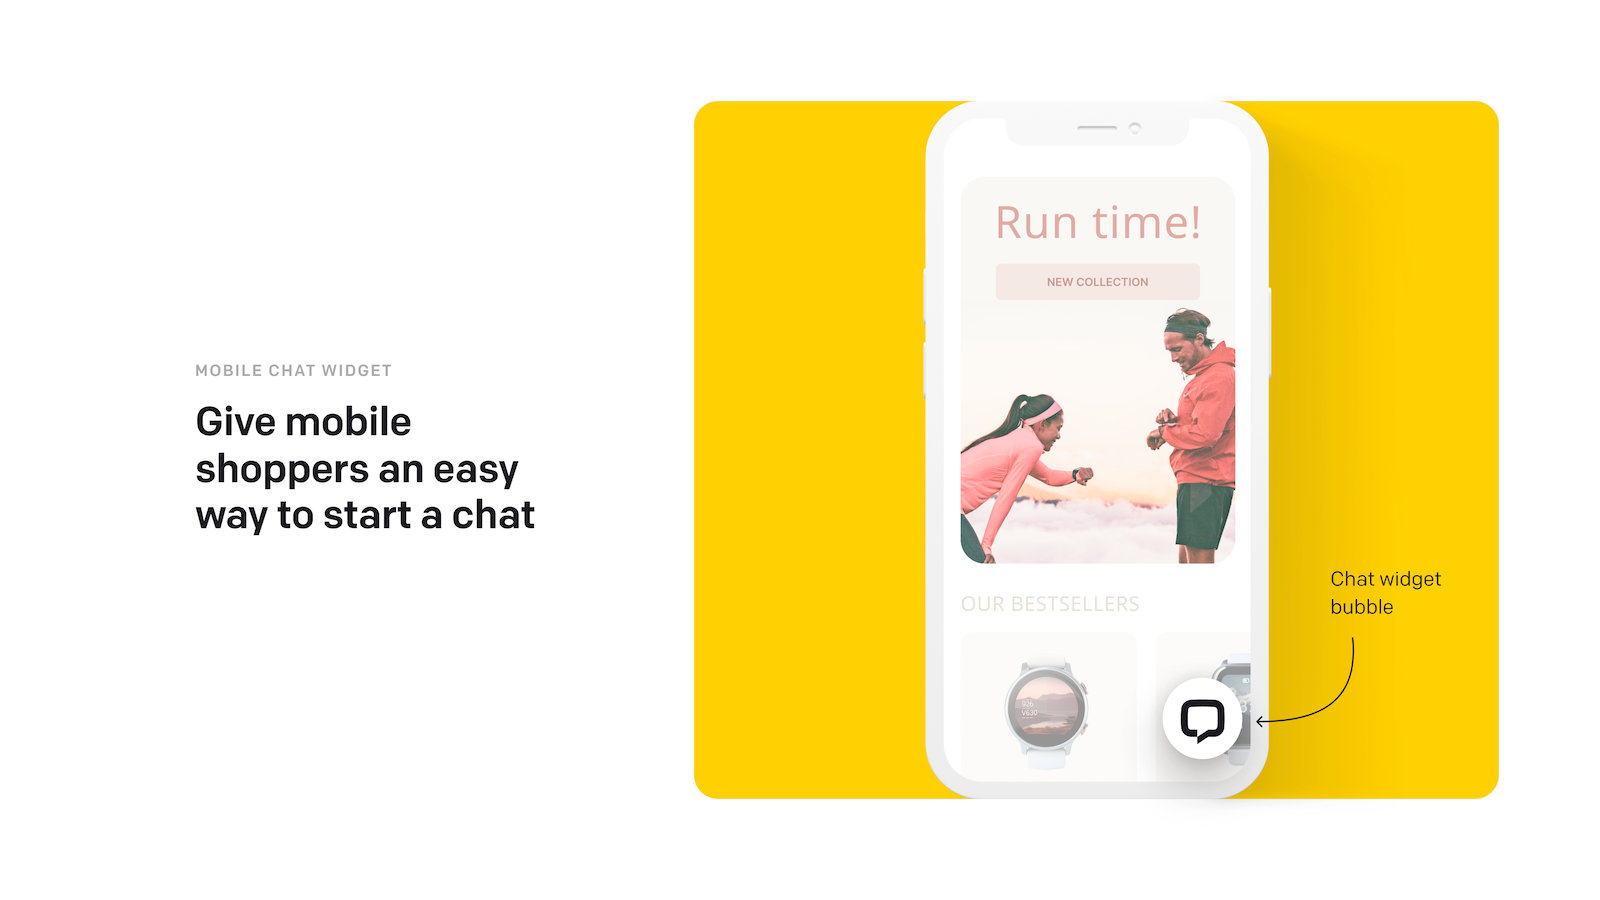 Eine Chat-Widget-Blase, die mobile Käufer zum Starten eines Chats verwenden können.